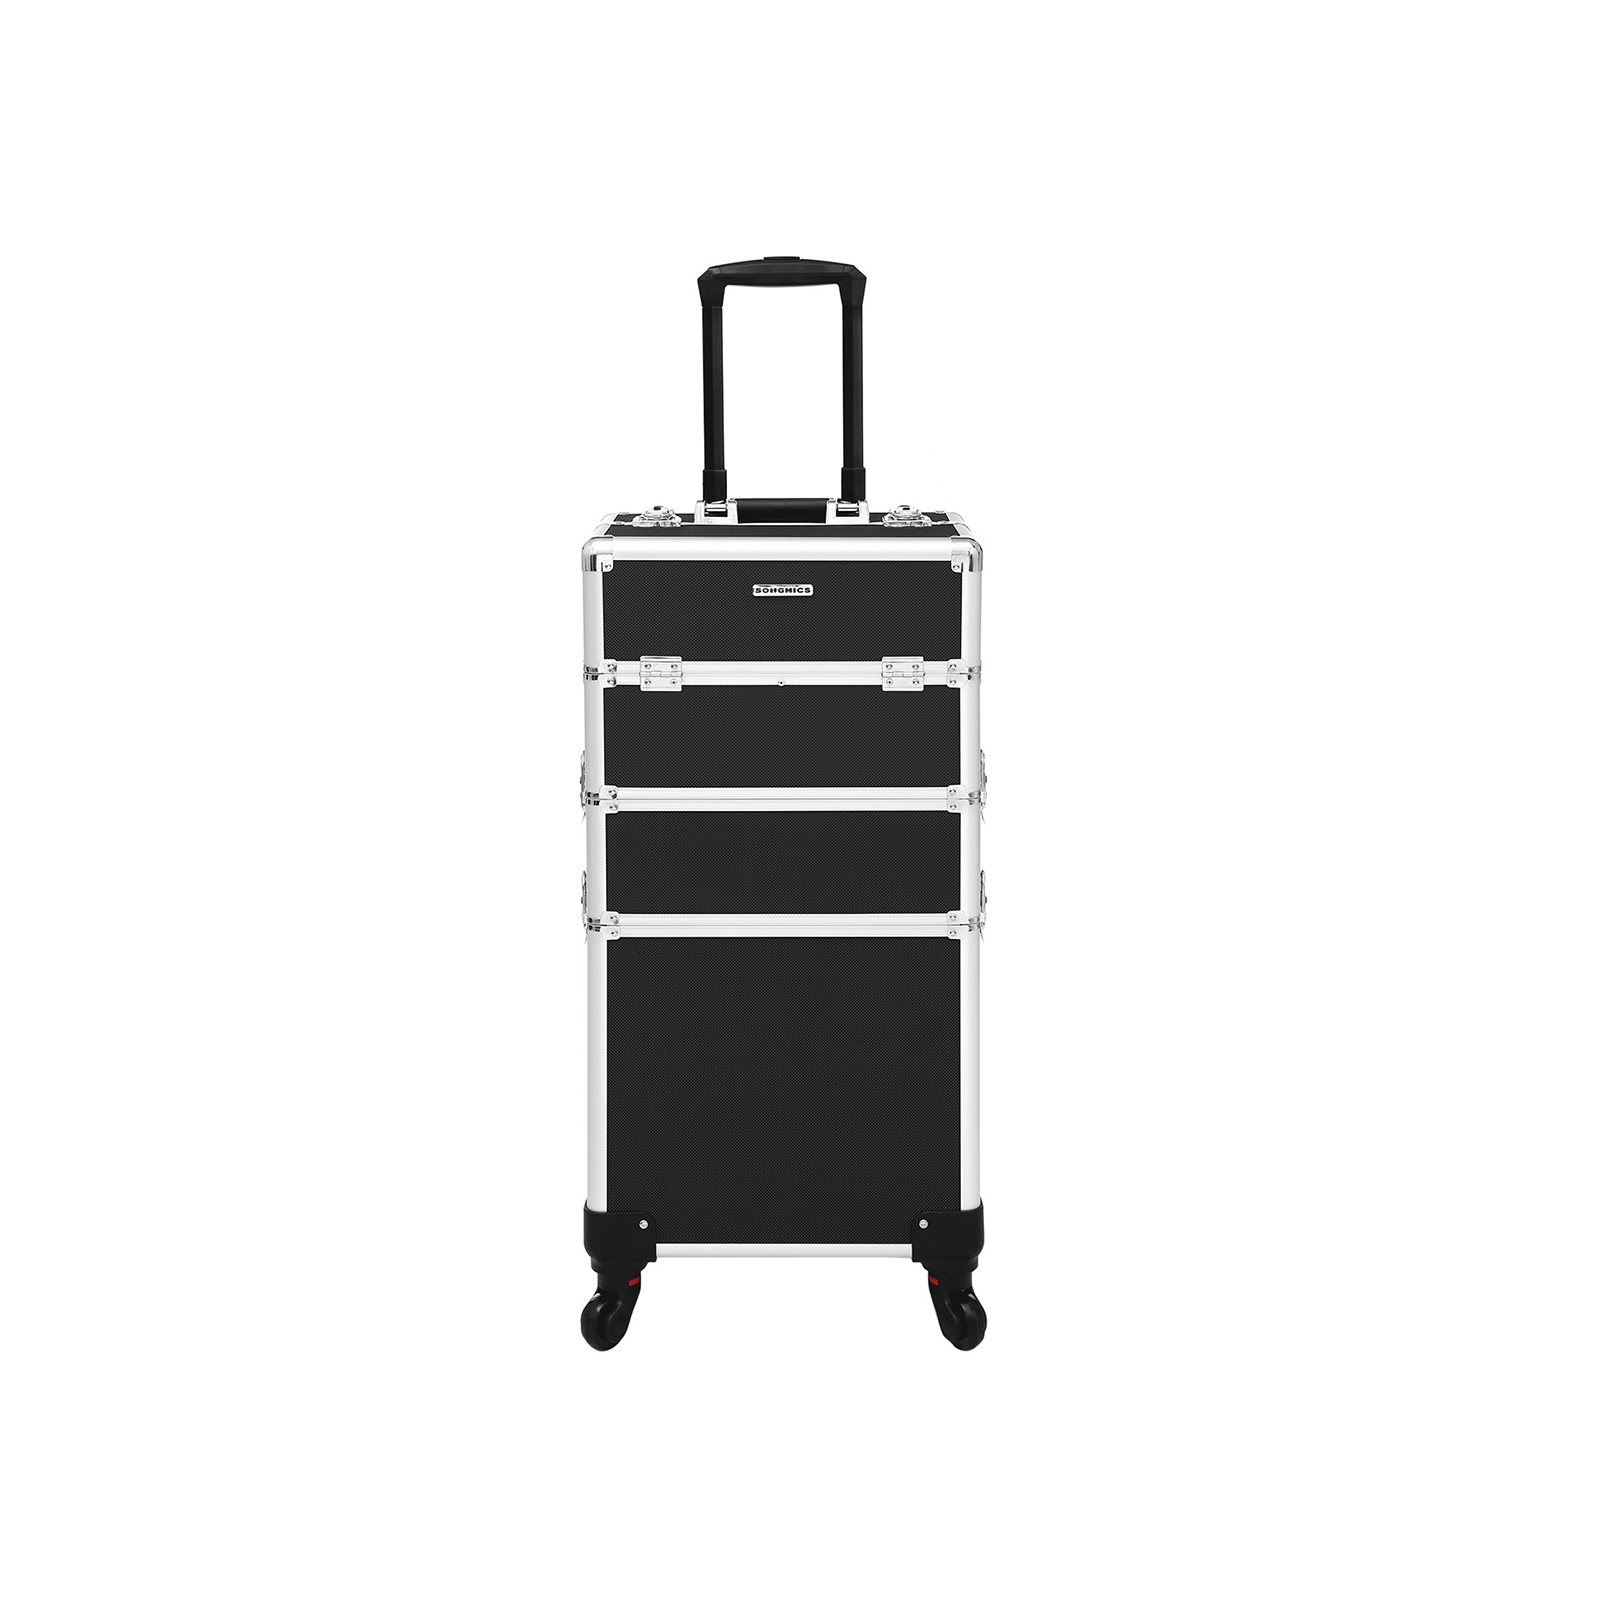 Kapperskoffer – Make-up koffer – Op wielen – Aluminium – Zwart